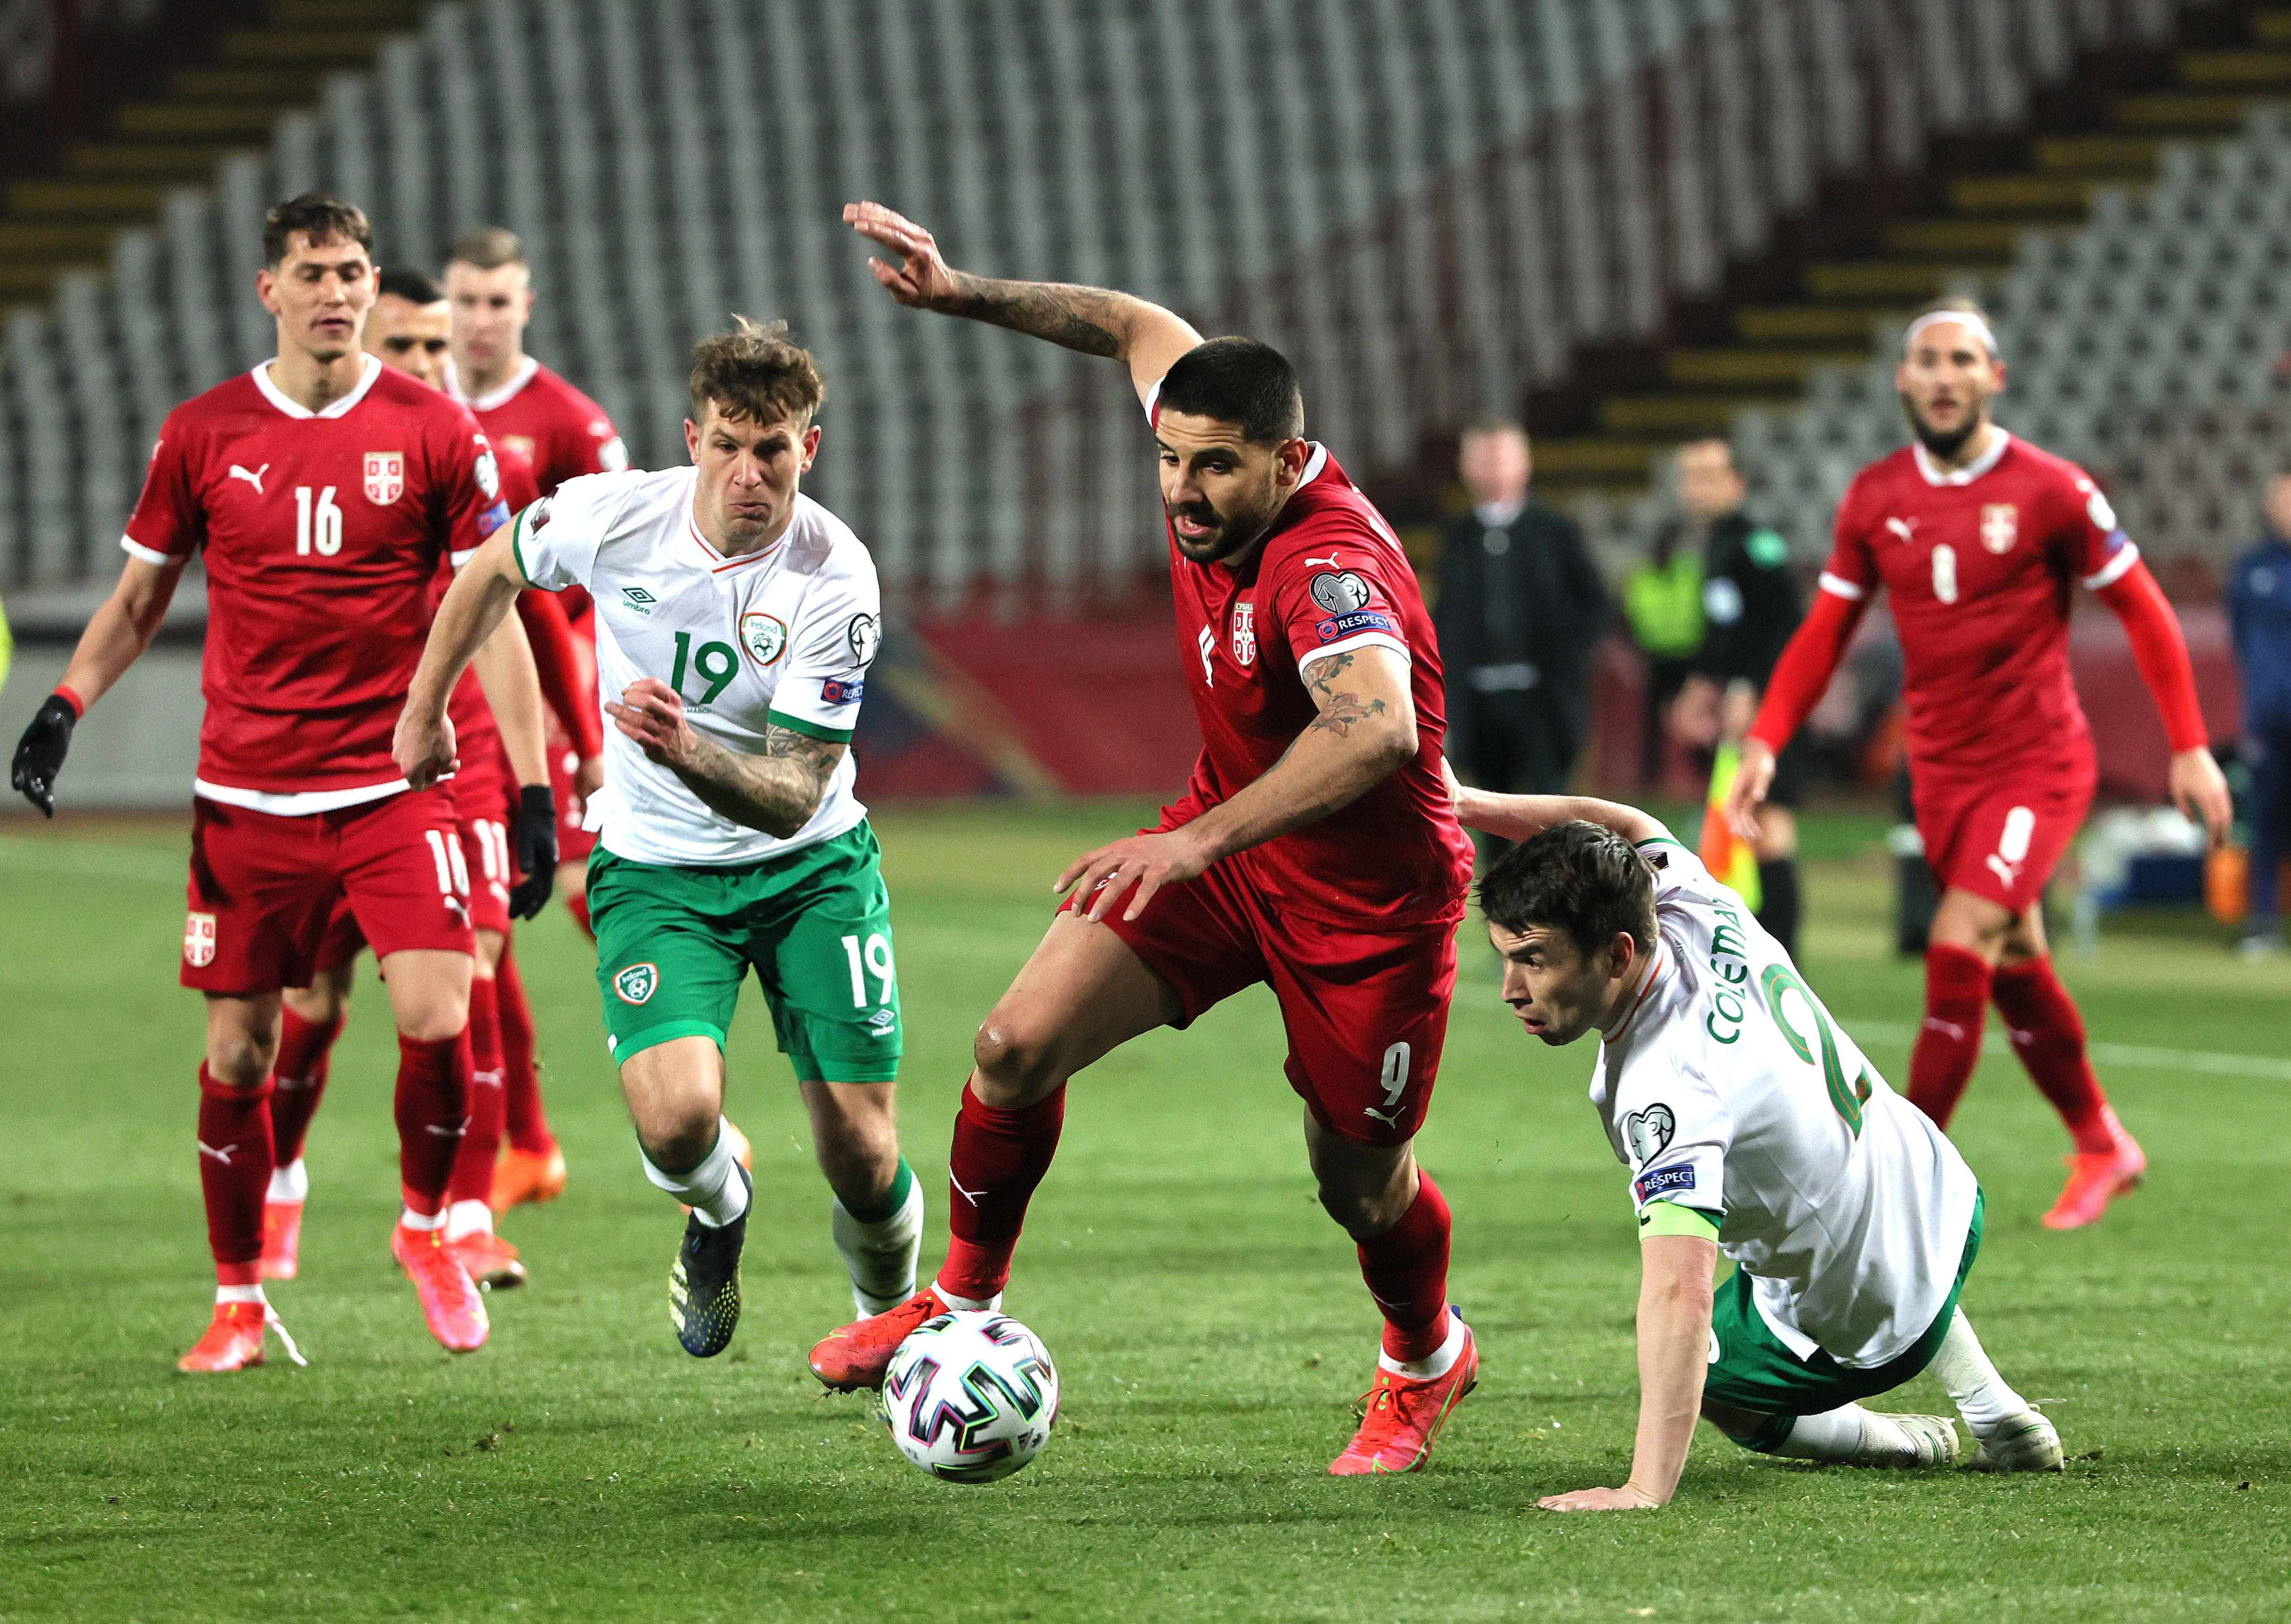 Mitrović está imparable. El delantero serbio espera extender su racha y marcarle a Portugal en un duelo clave camino a Qatar. (Foto: Getty)